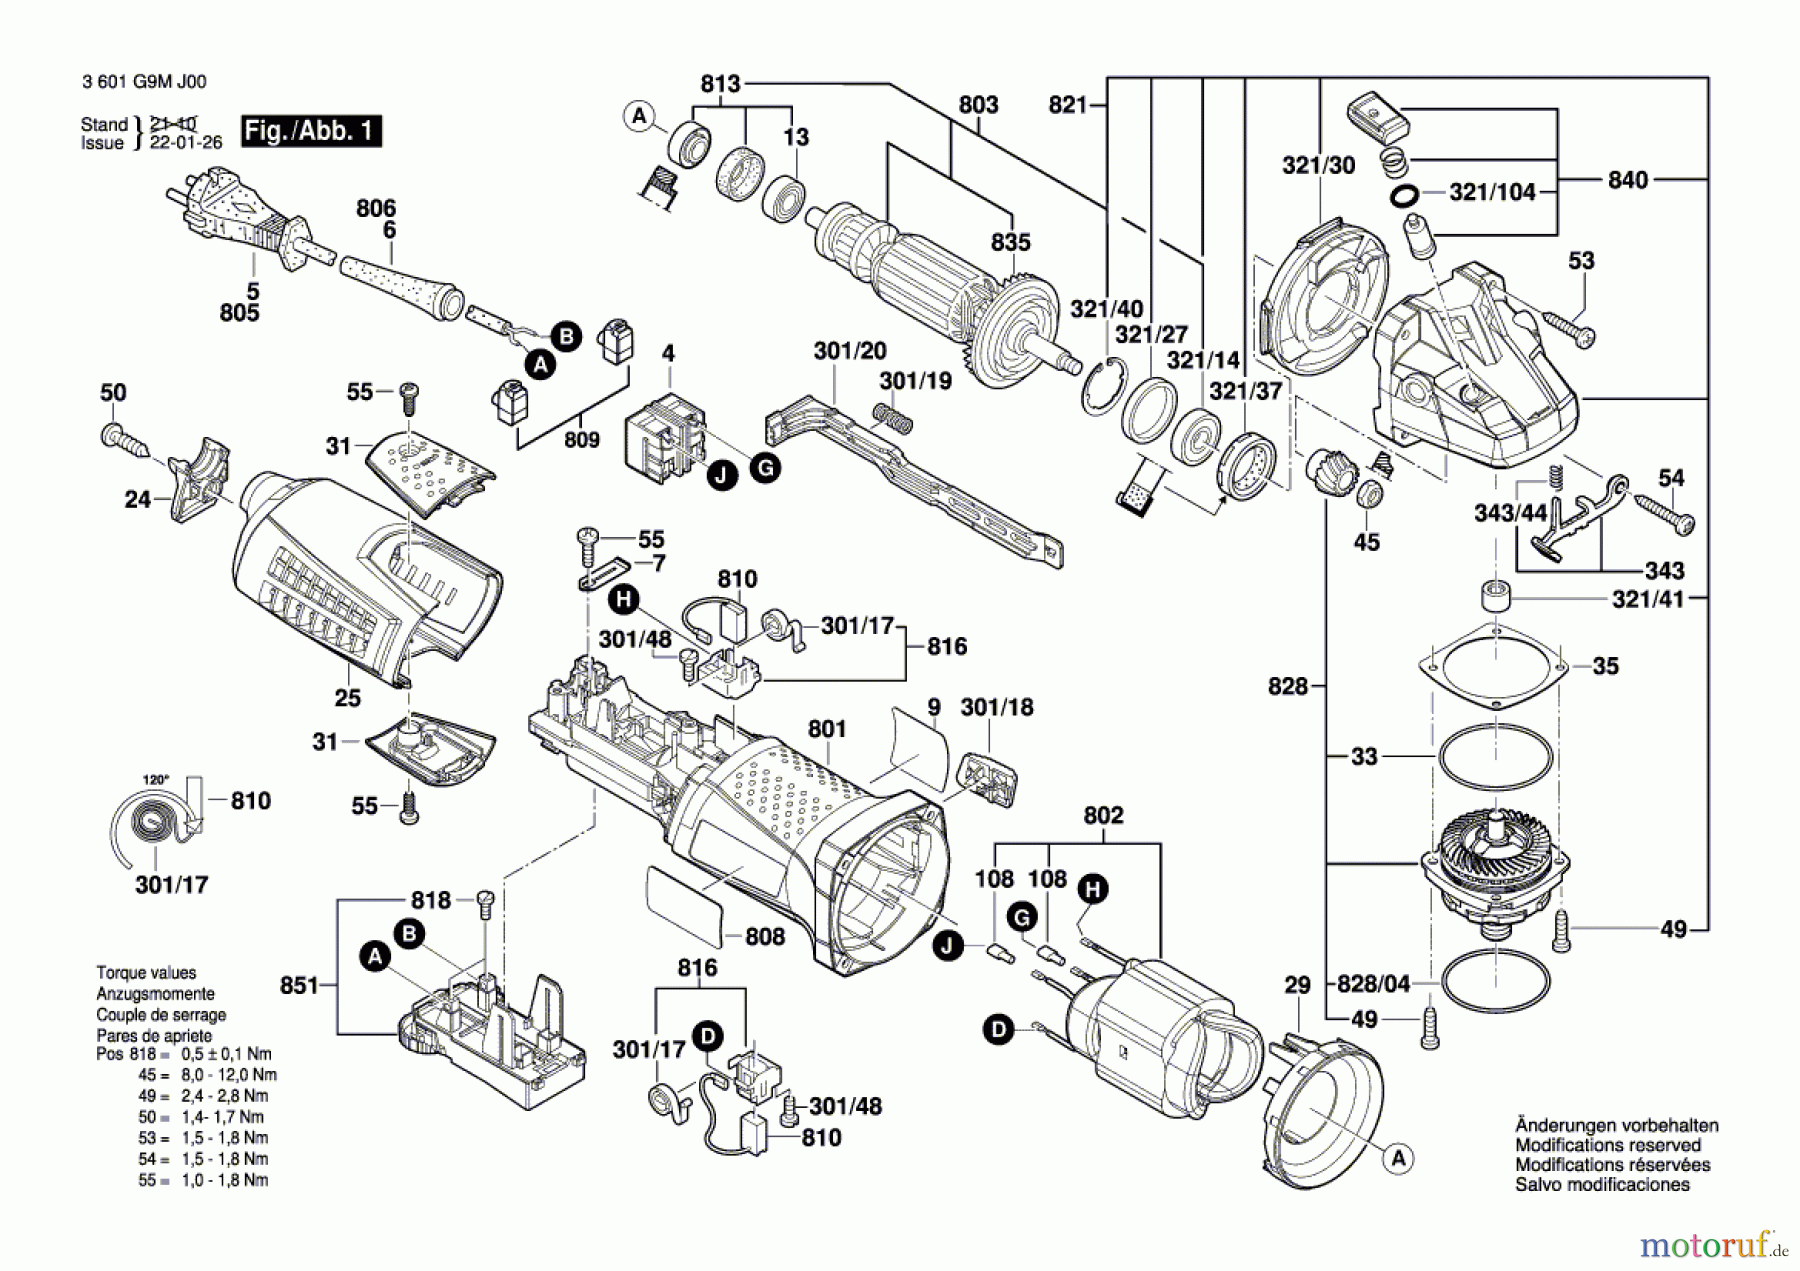  Bosch Werkzeug Winkelschleifer CG 17-125 Inox Seite 1